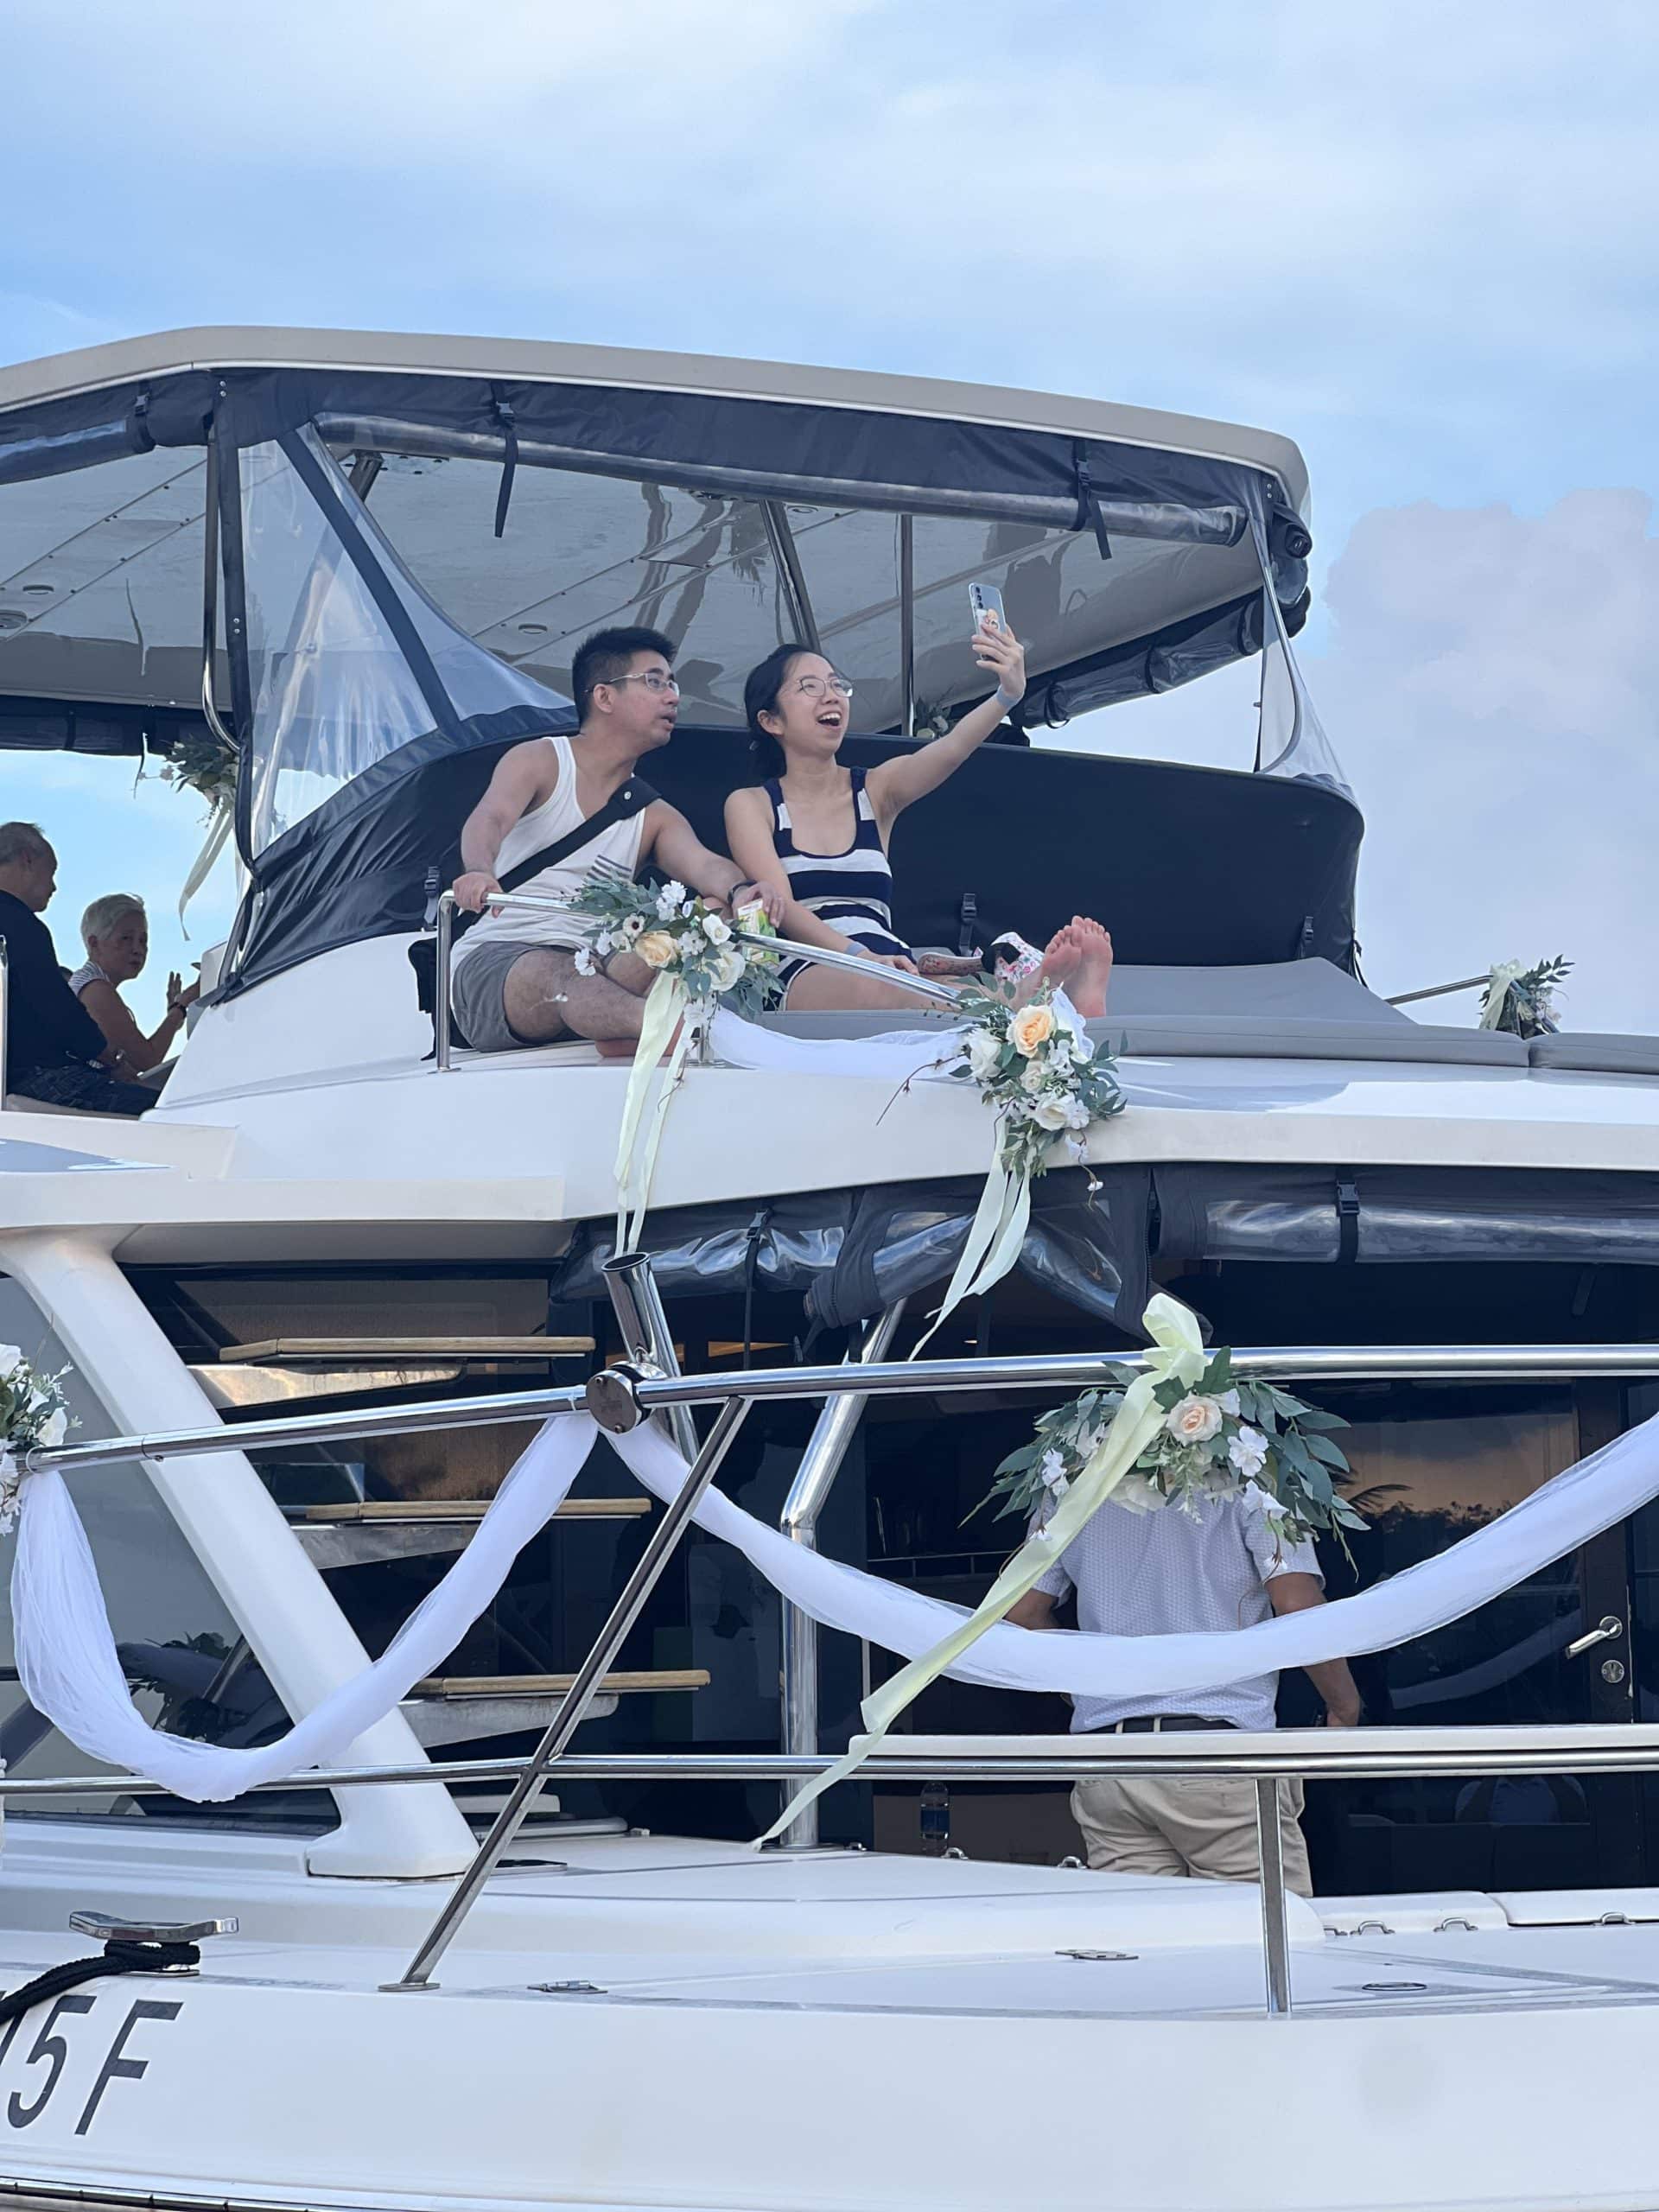 Yacht Rental Wedding Solemnisation